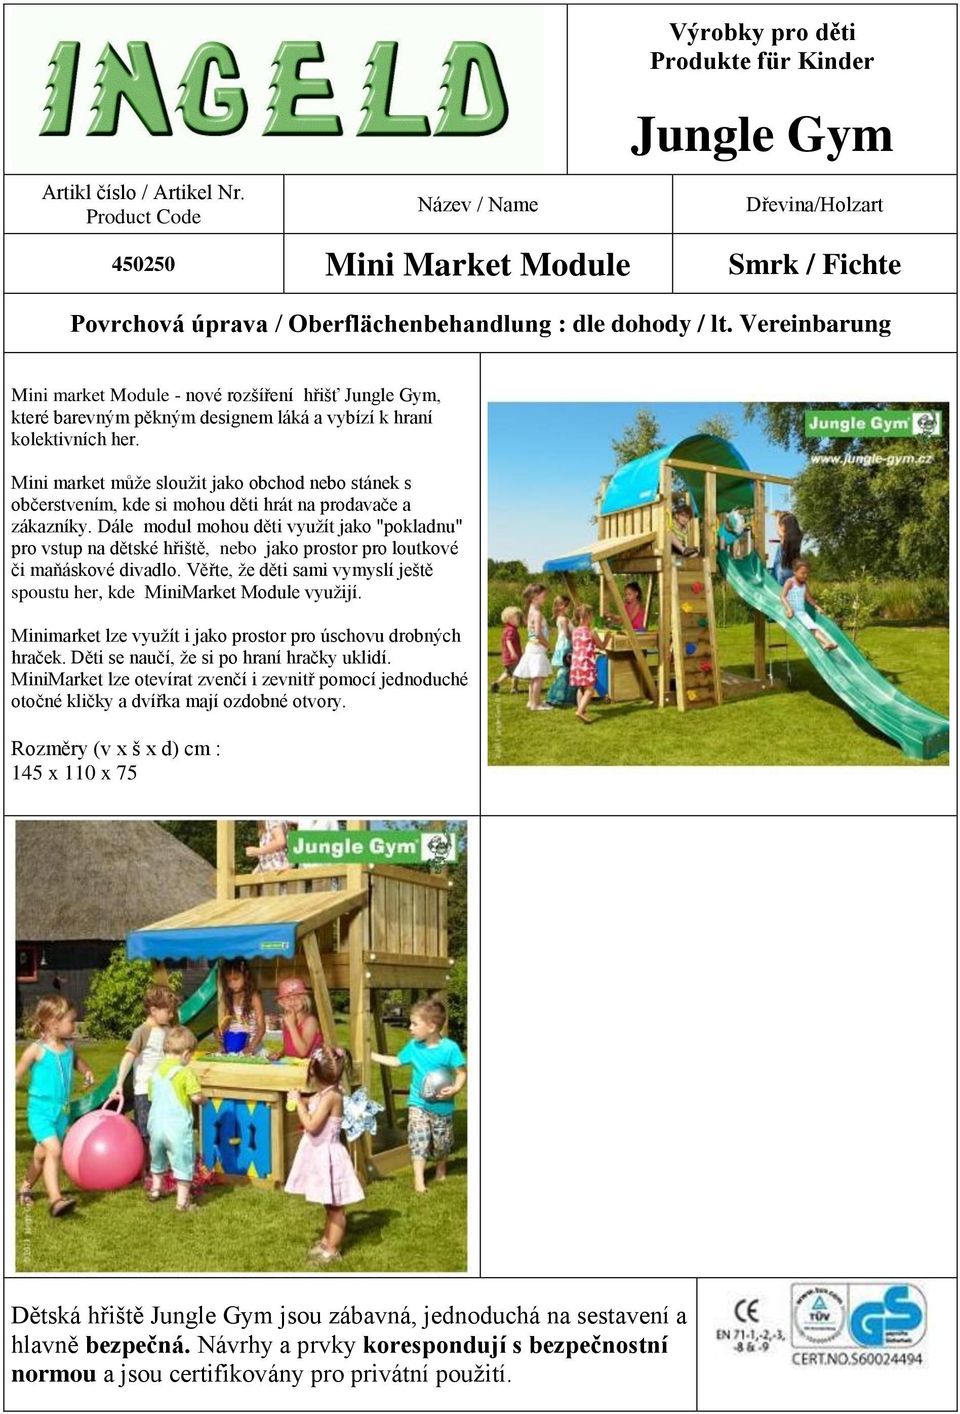 Dále modul mohou děti využít jako "pokladnu" pro vstup na dětské hřiště, nebo jako prostor pro loutkové či maňáskové divadlo.